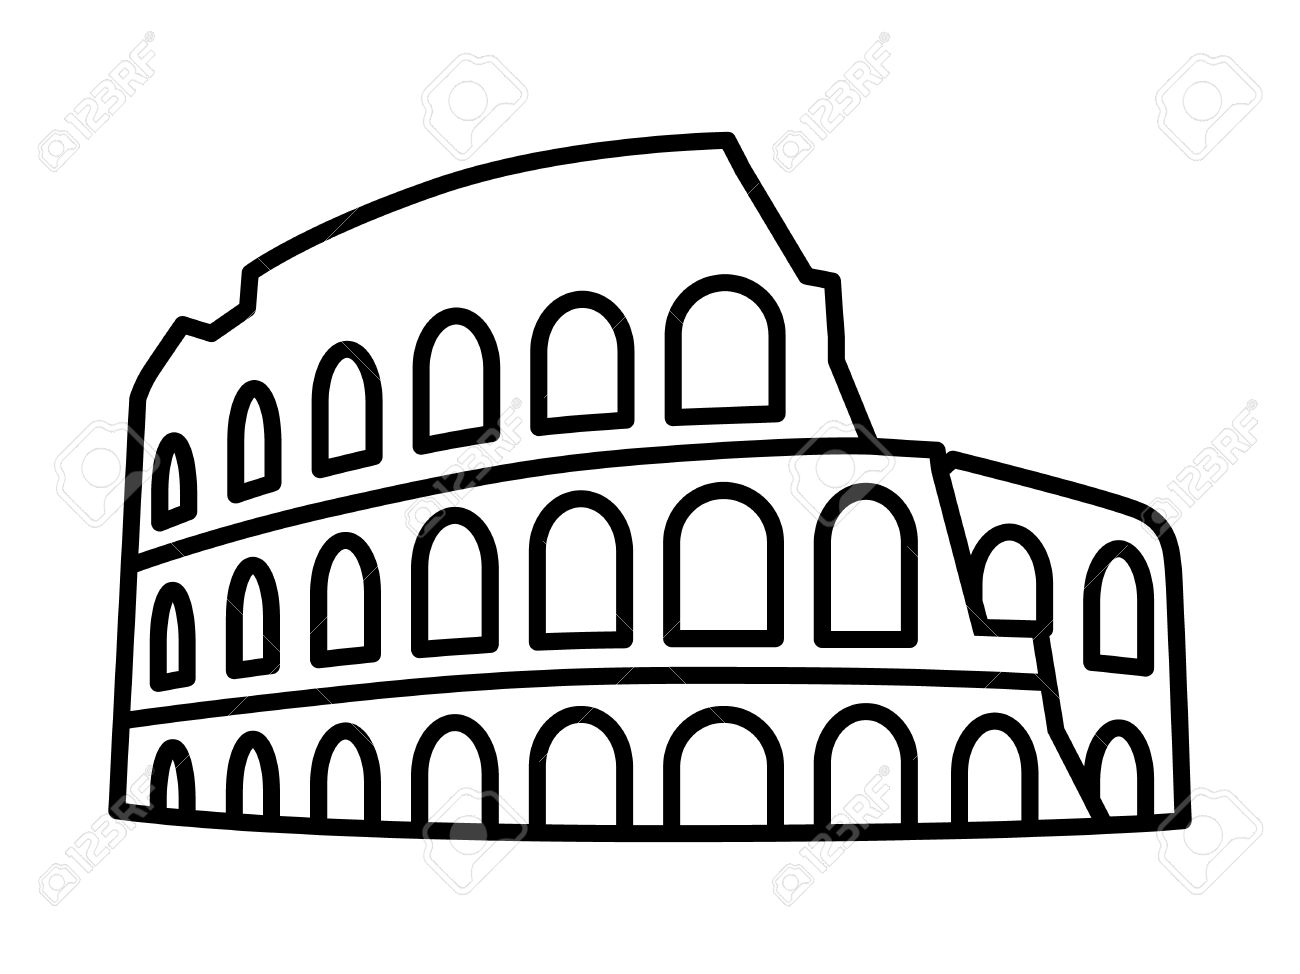 Rome Colosseum Sign Italian Famous Landmark Stock Vector 593629409 